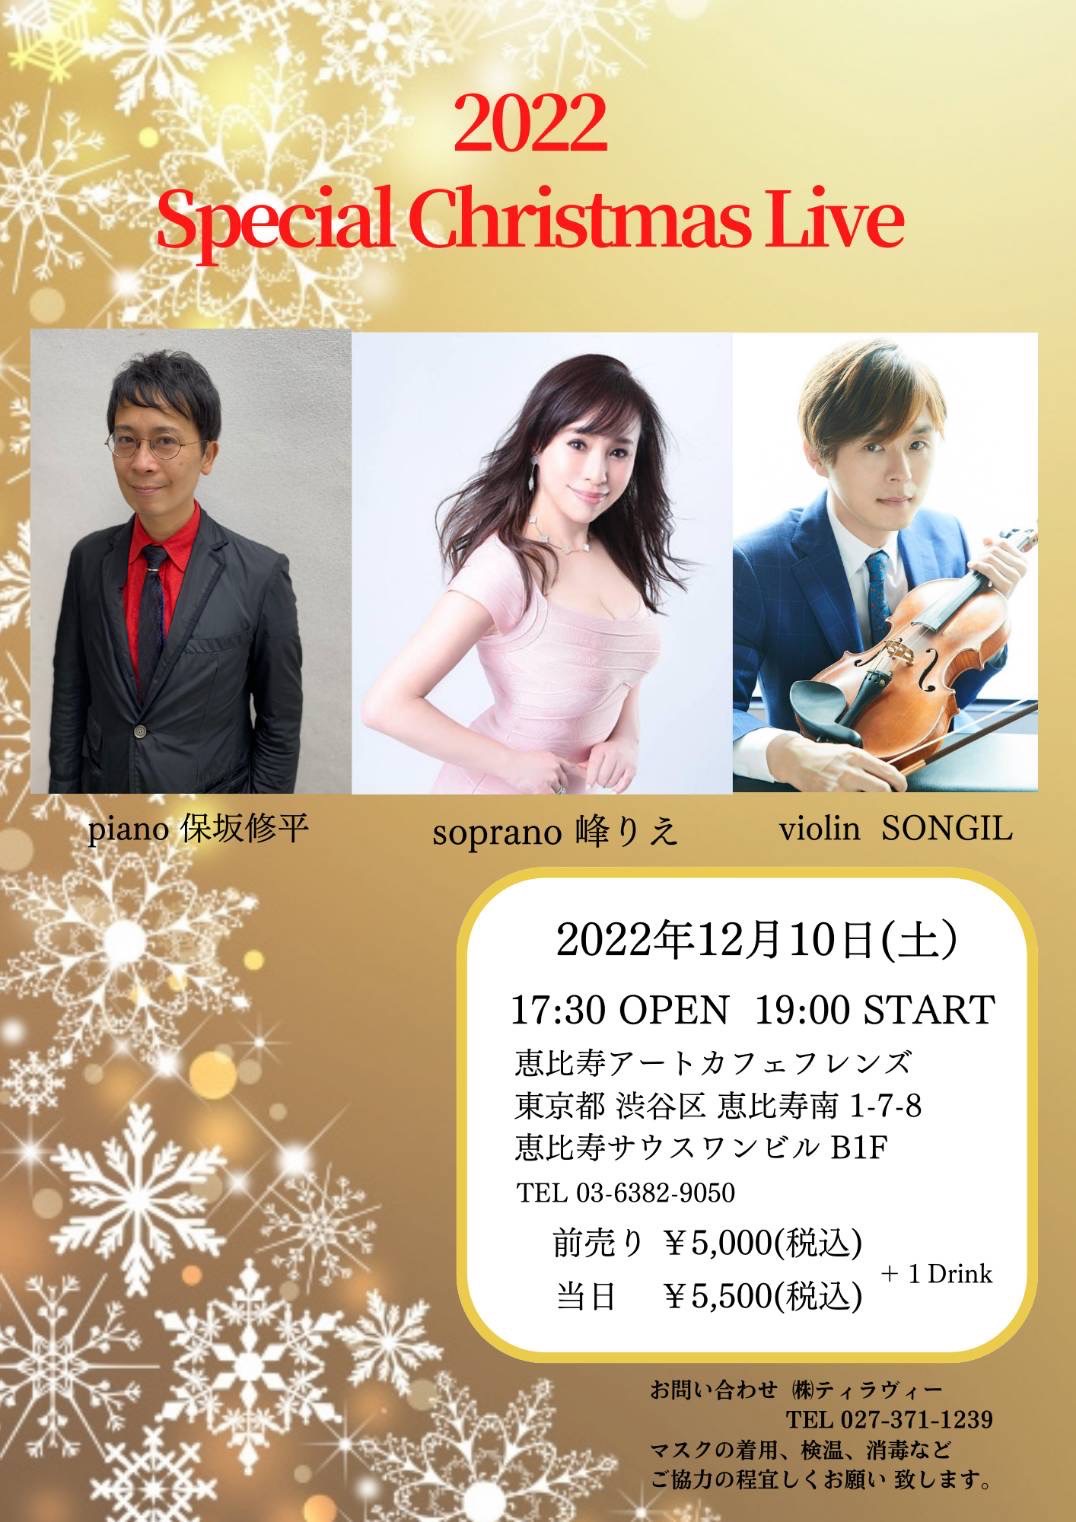 2022 Special Christmas Live